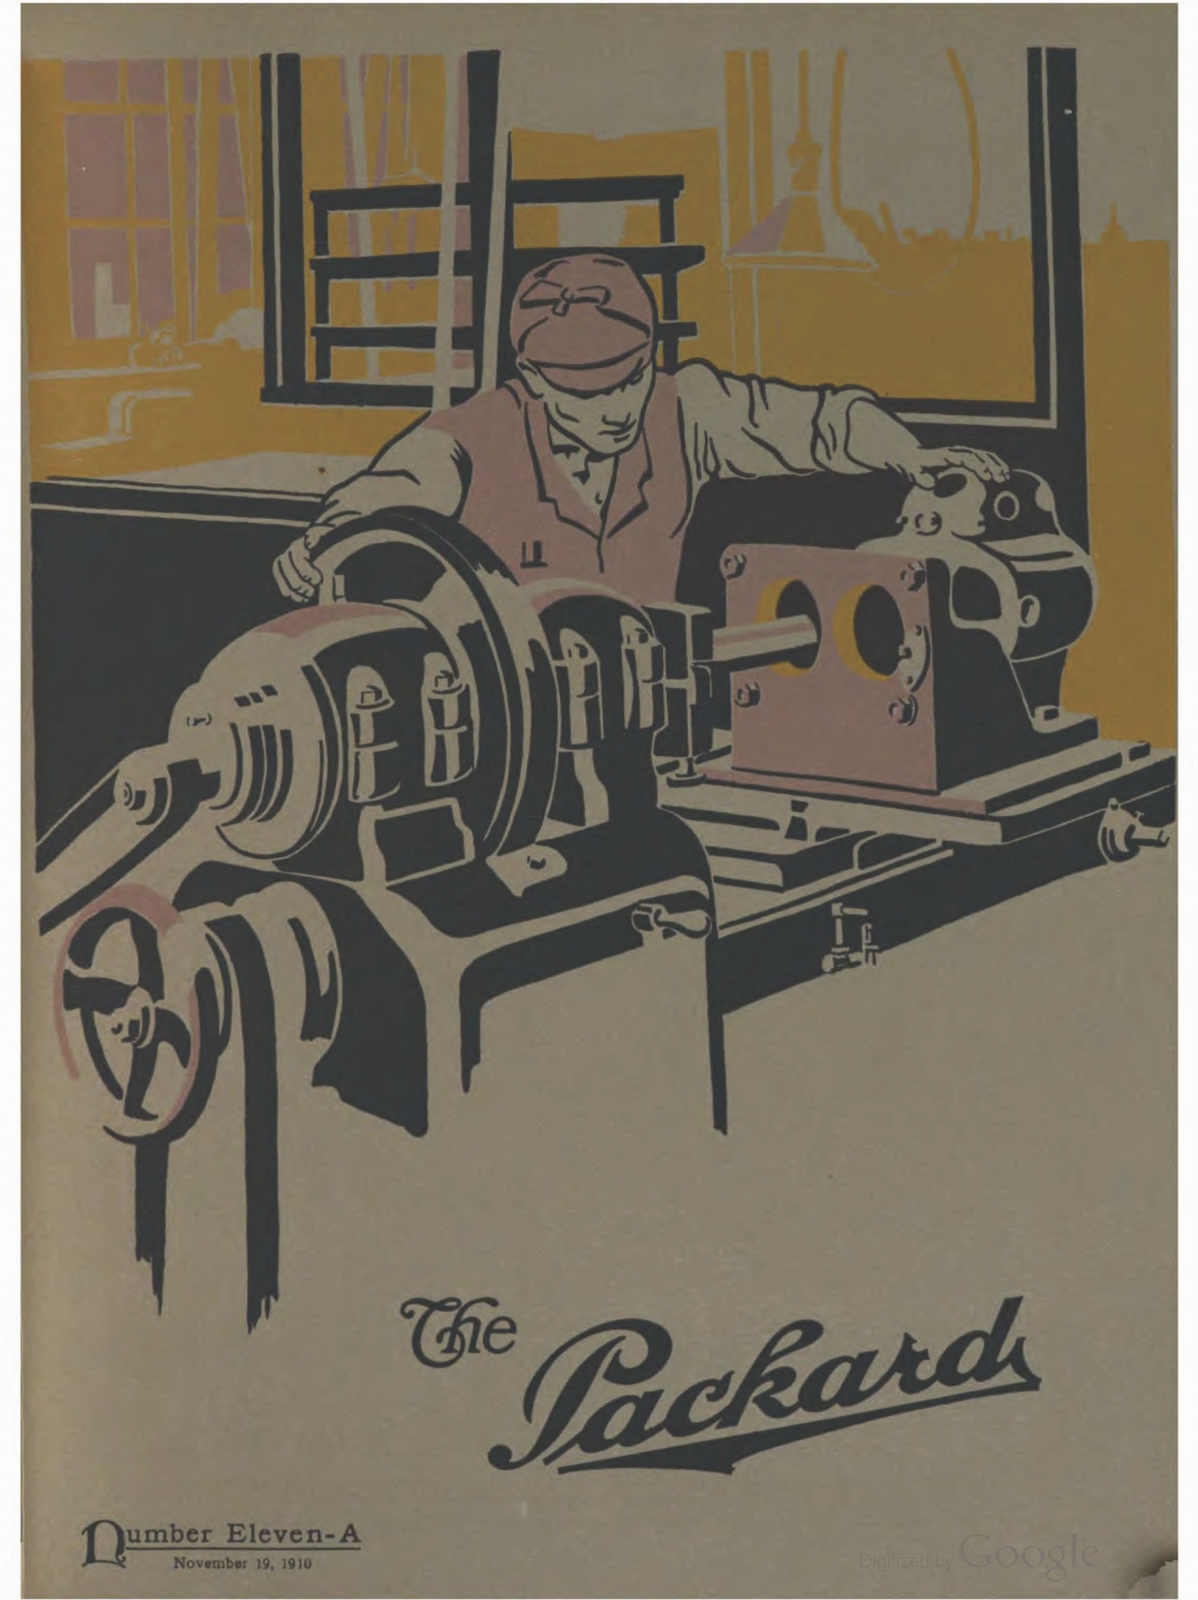 n_1910 'The Packard' Newsletter-213.jpg